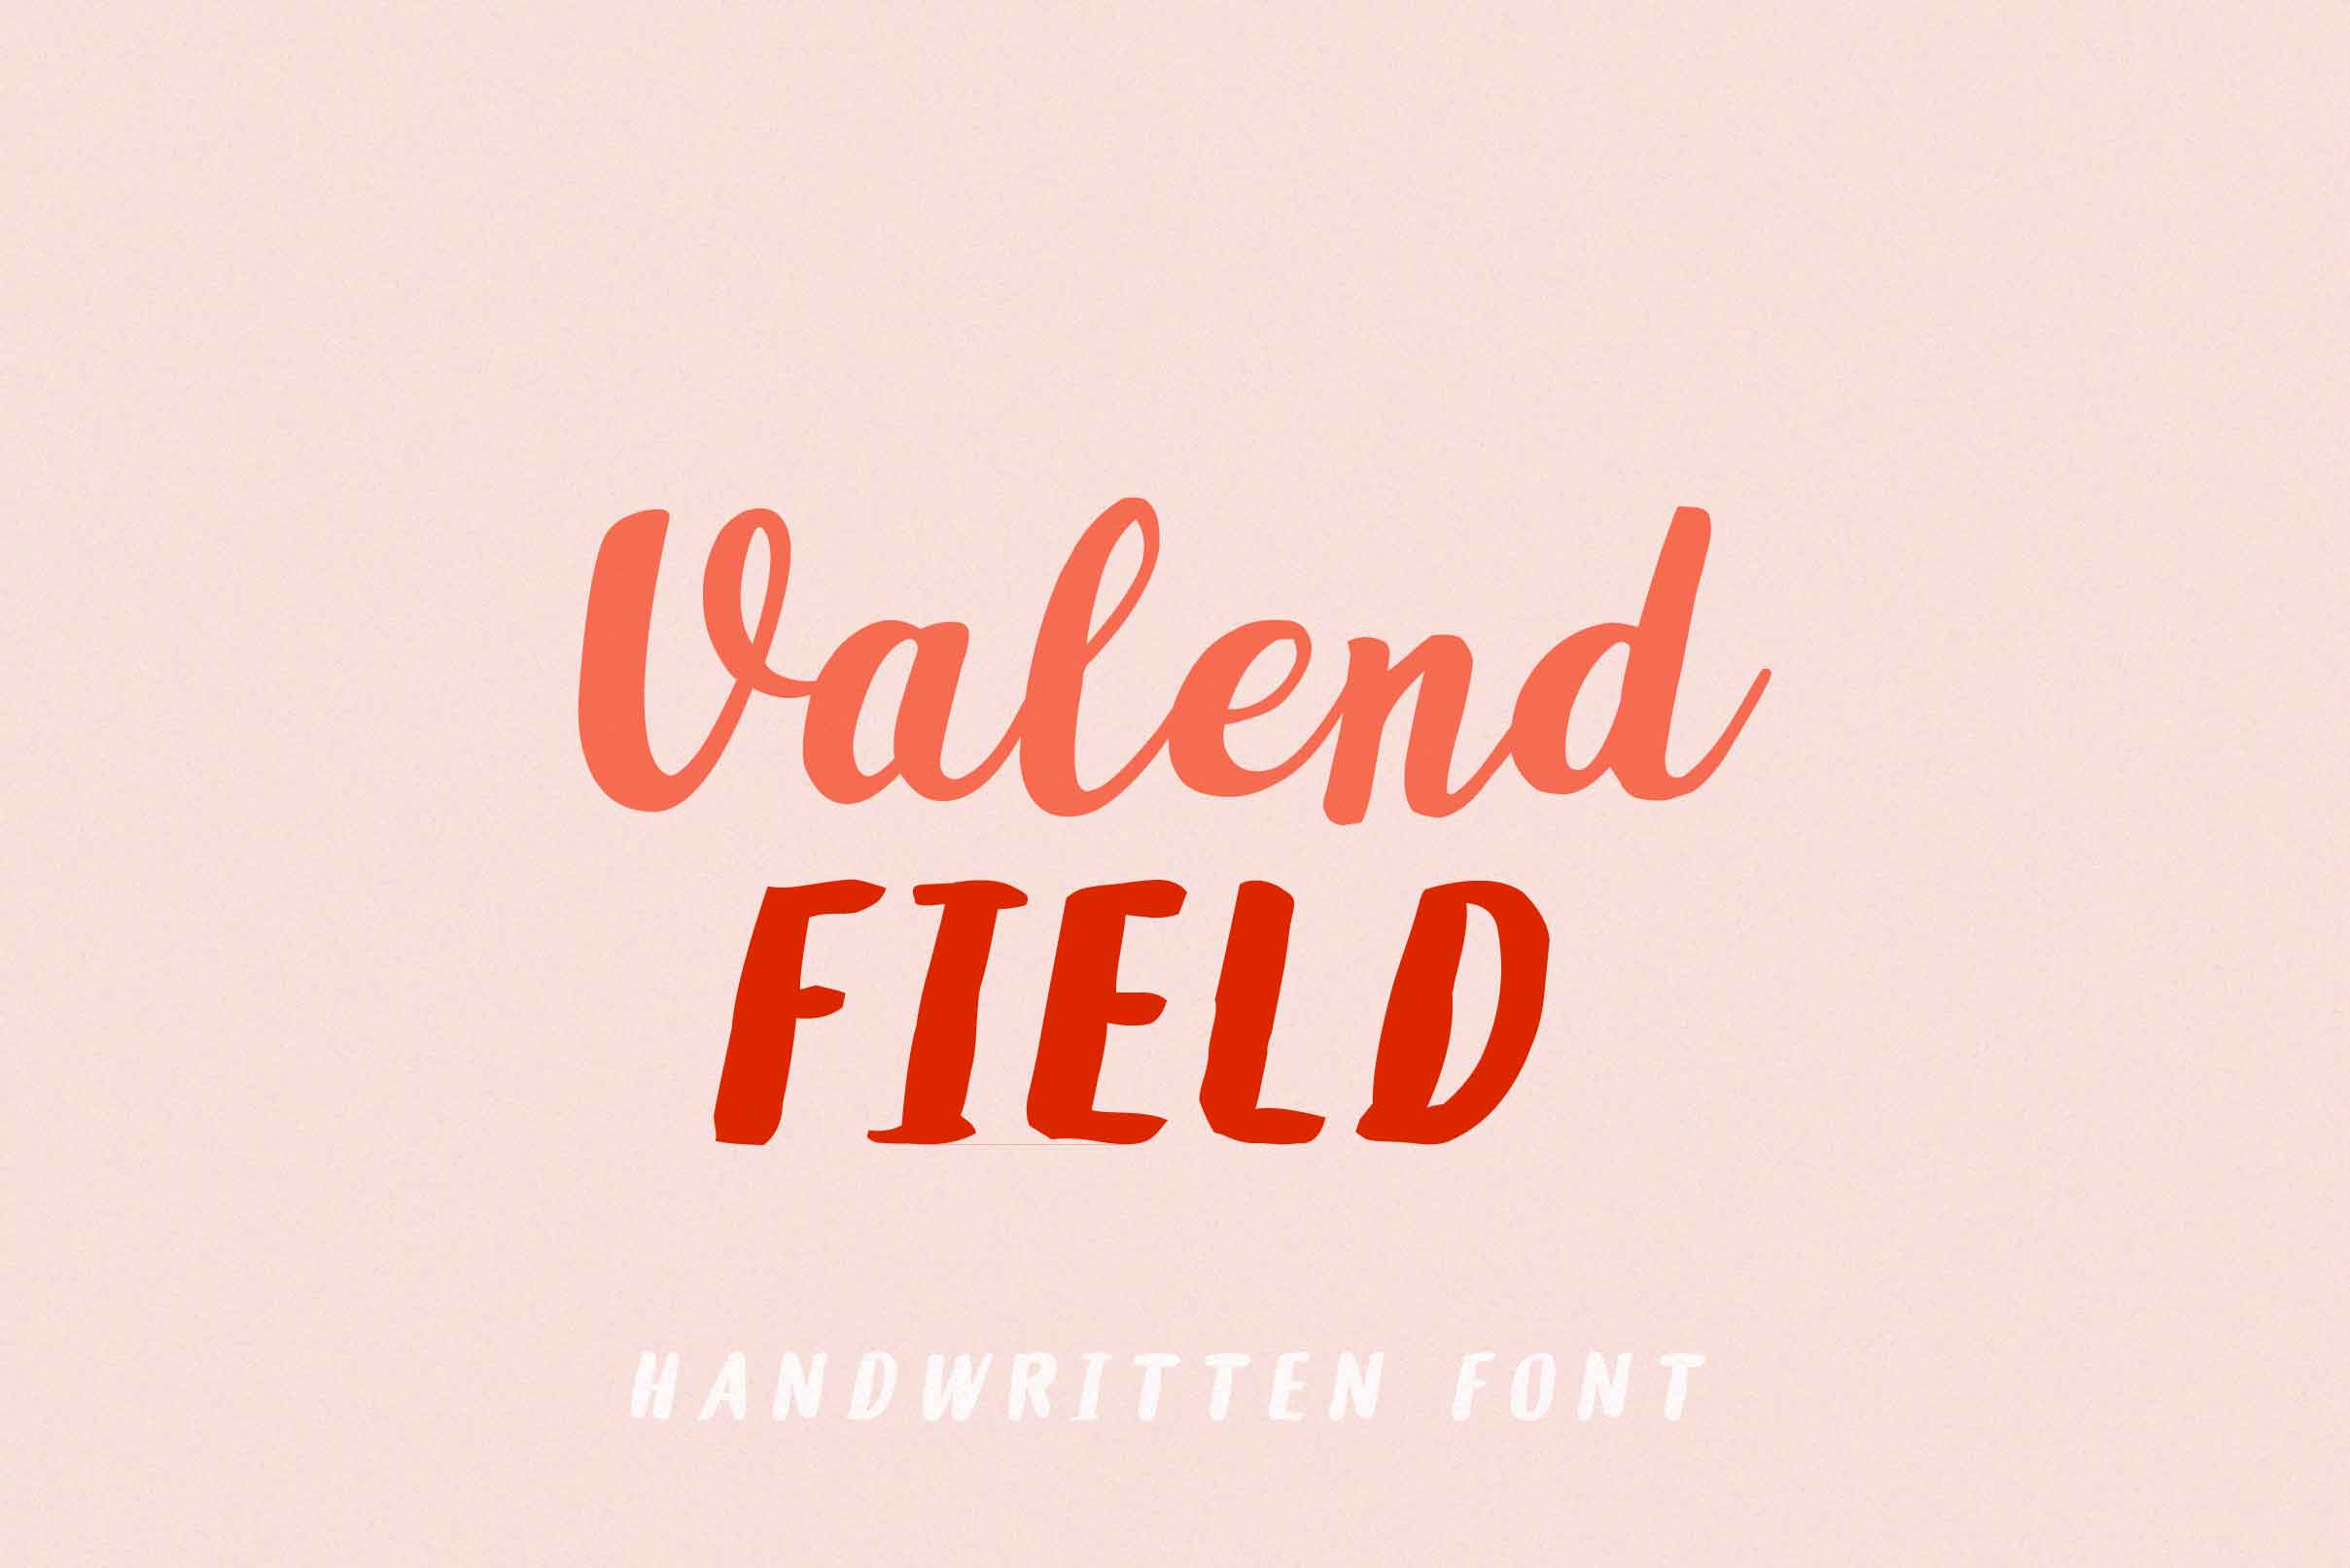 Valend Field标题手写英文字体下载插图